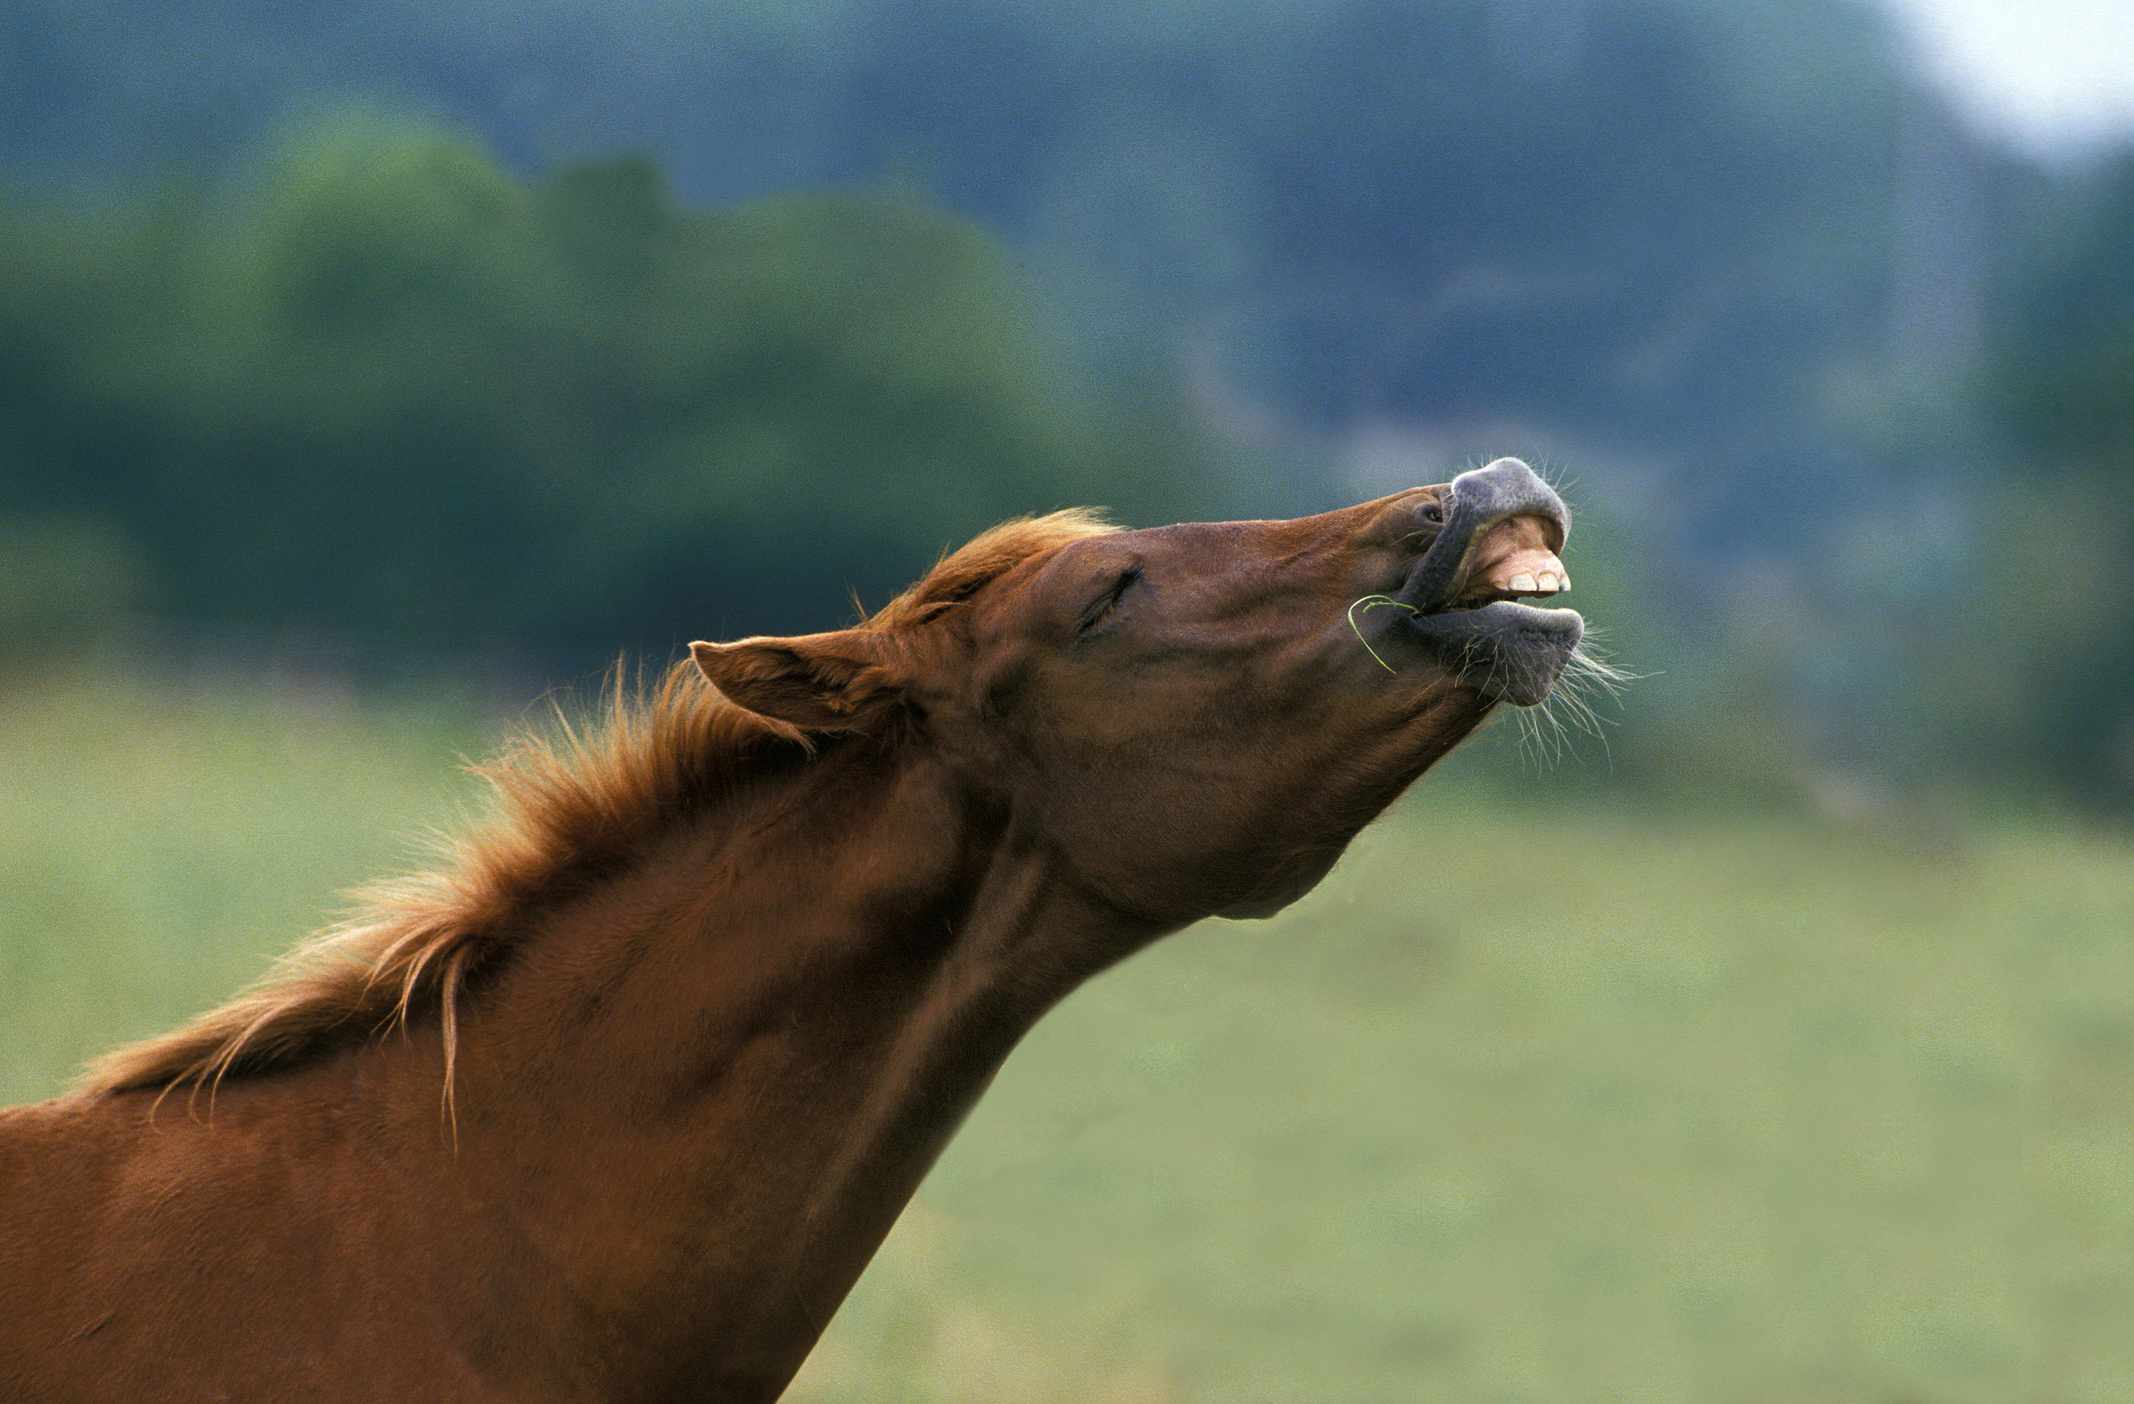 El caballo marrón estira el cuello para inclinar la cabeza hacia arriba, mostrando los dientes superiores